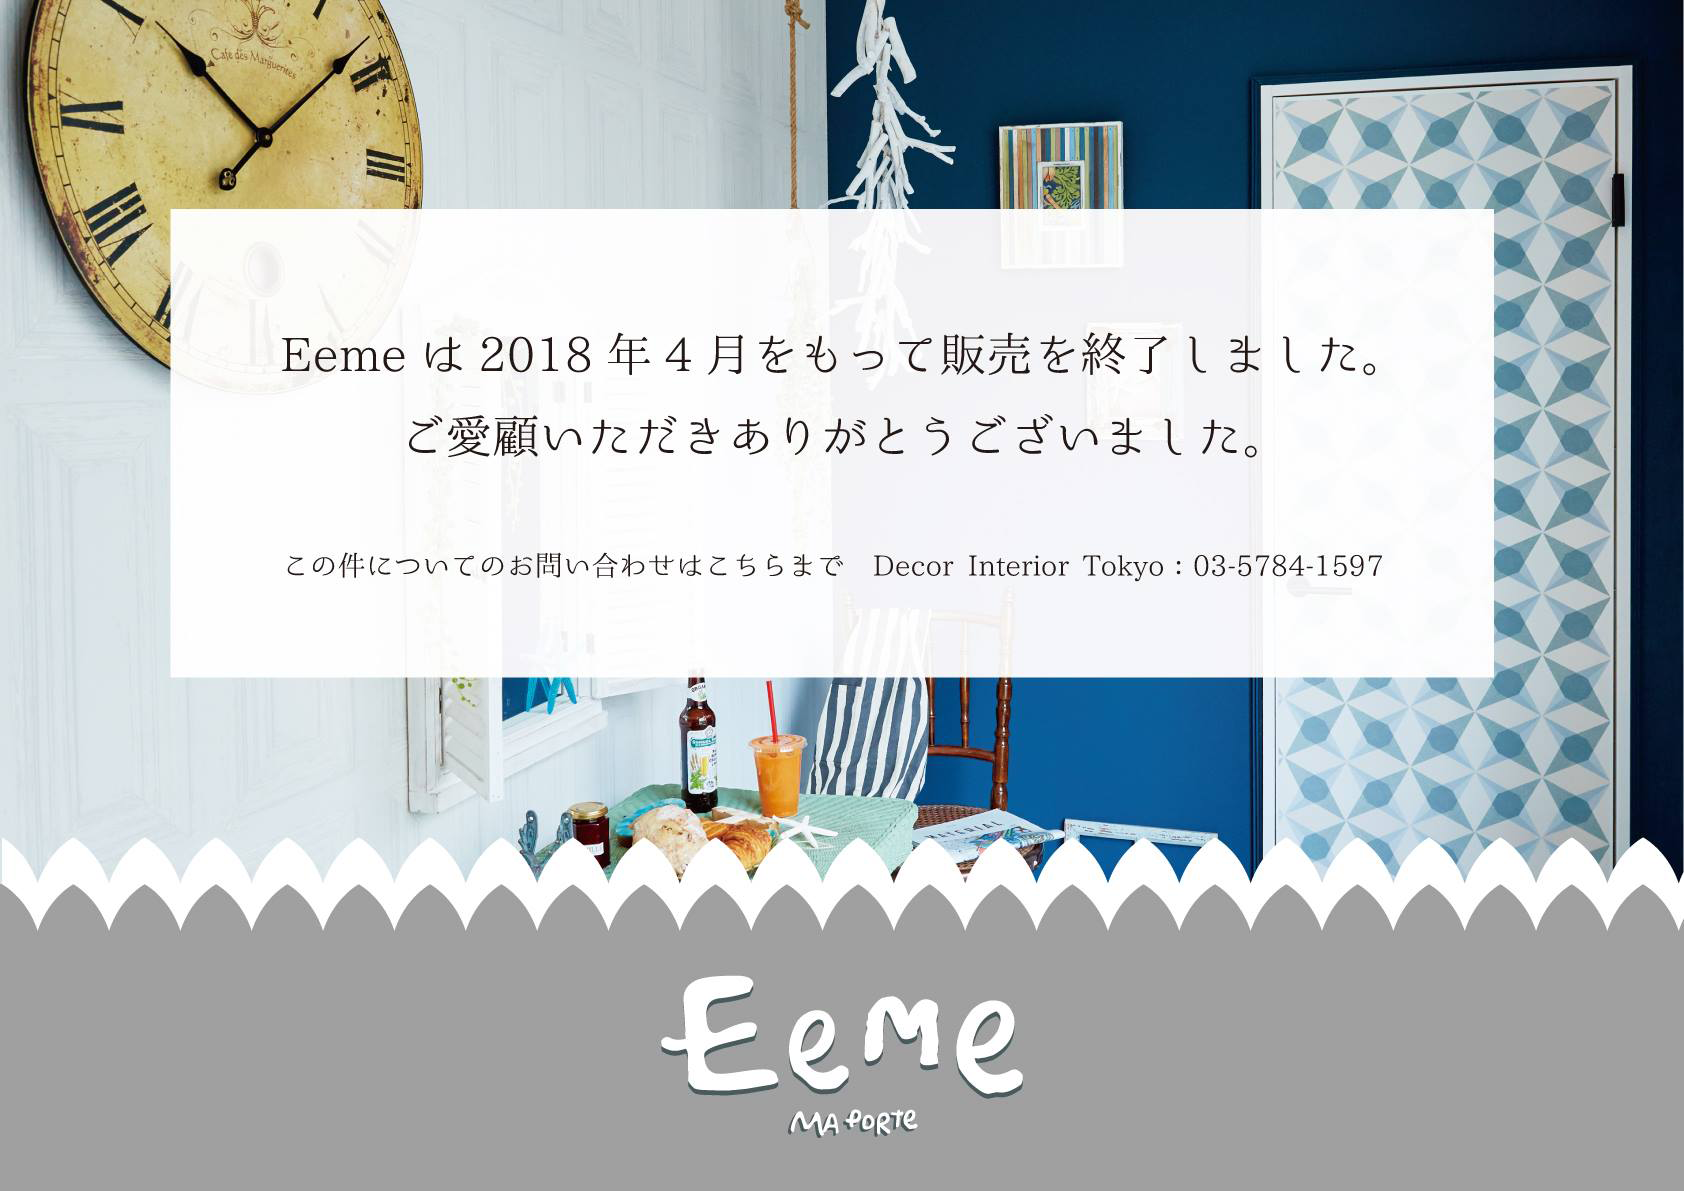 Eemeは2018年4月をもって販売を終了しました。ご愛顧いただきありがとうございました。この件についてのお問い合わせはこちらまで　Decor Interior Tokyo : 03-5784-1597